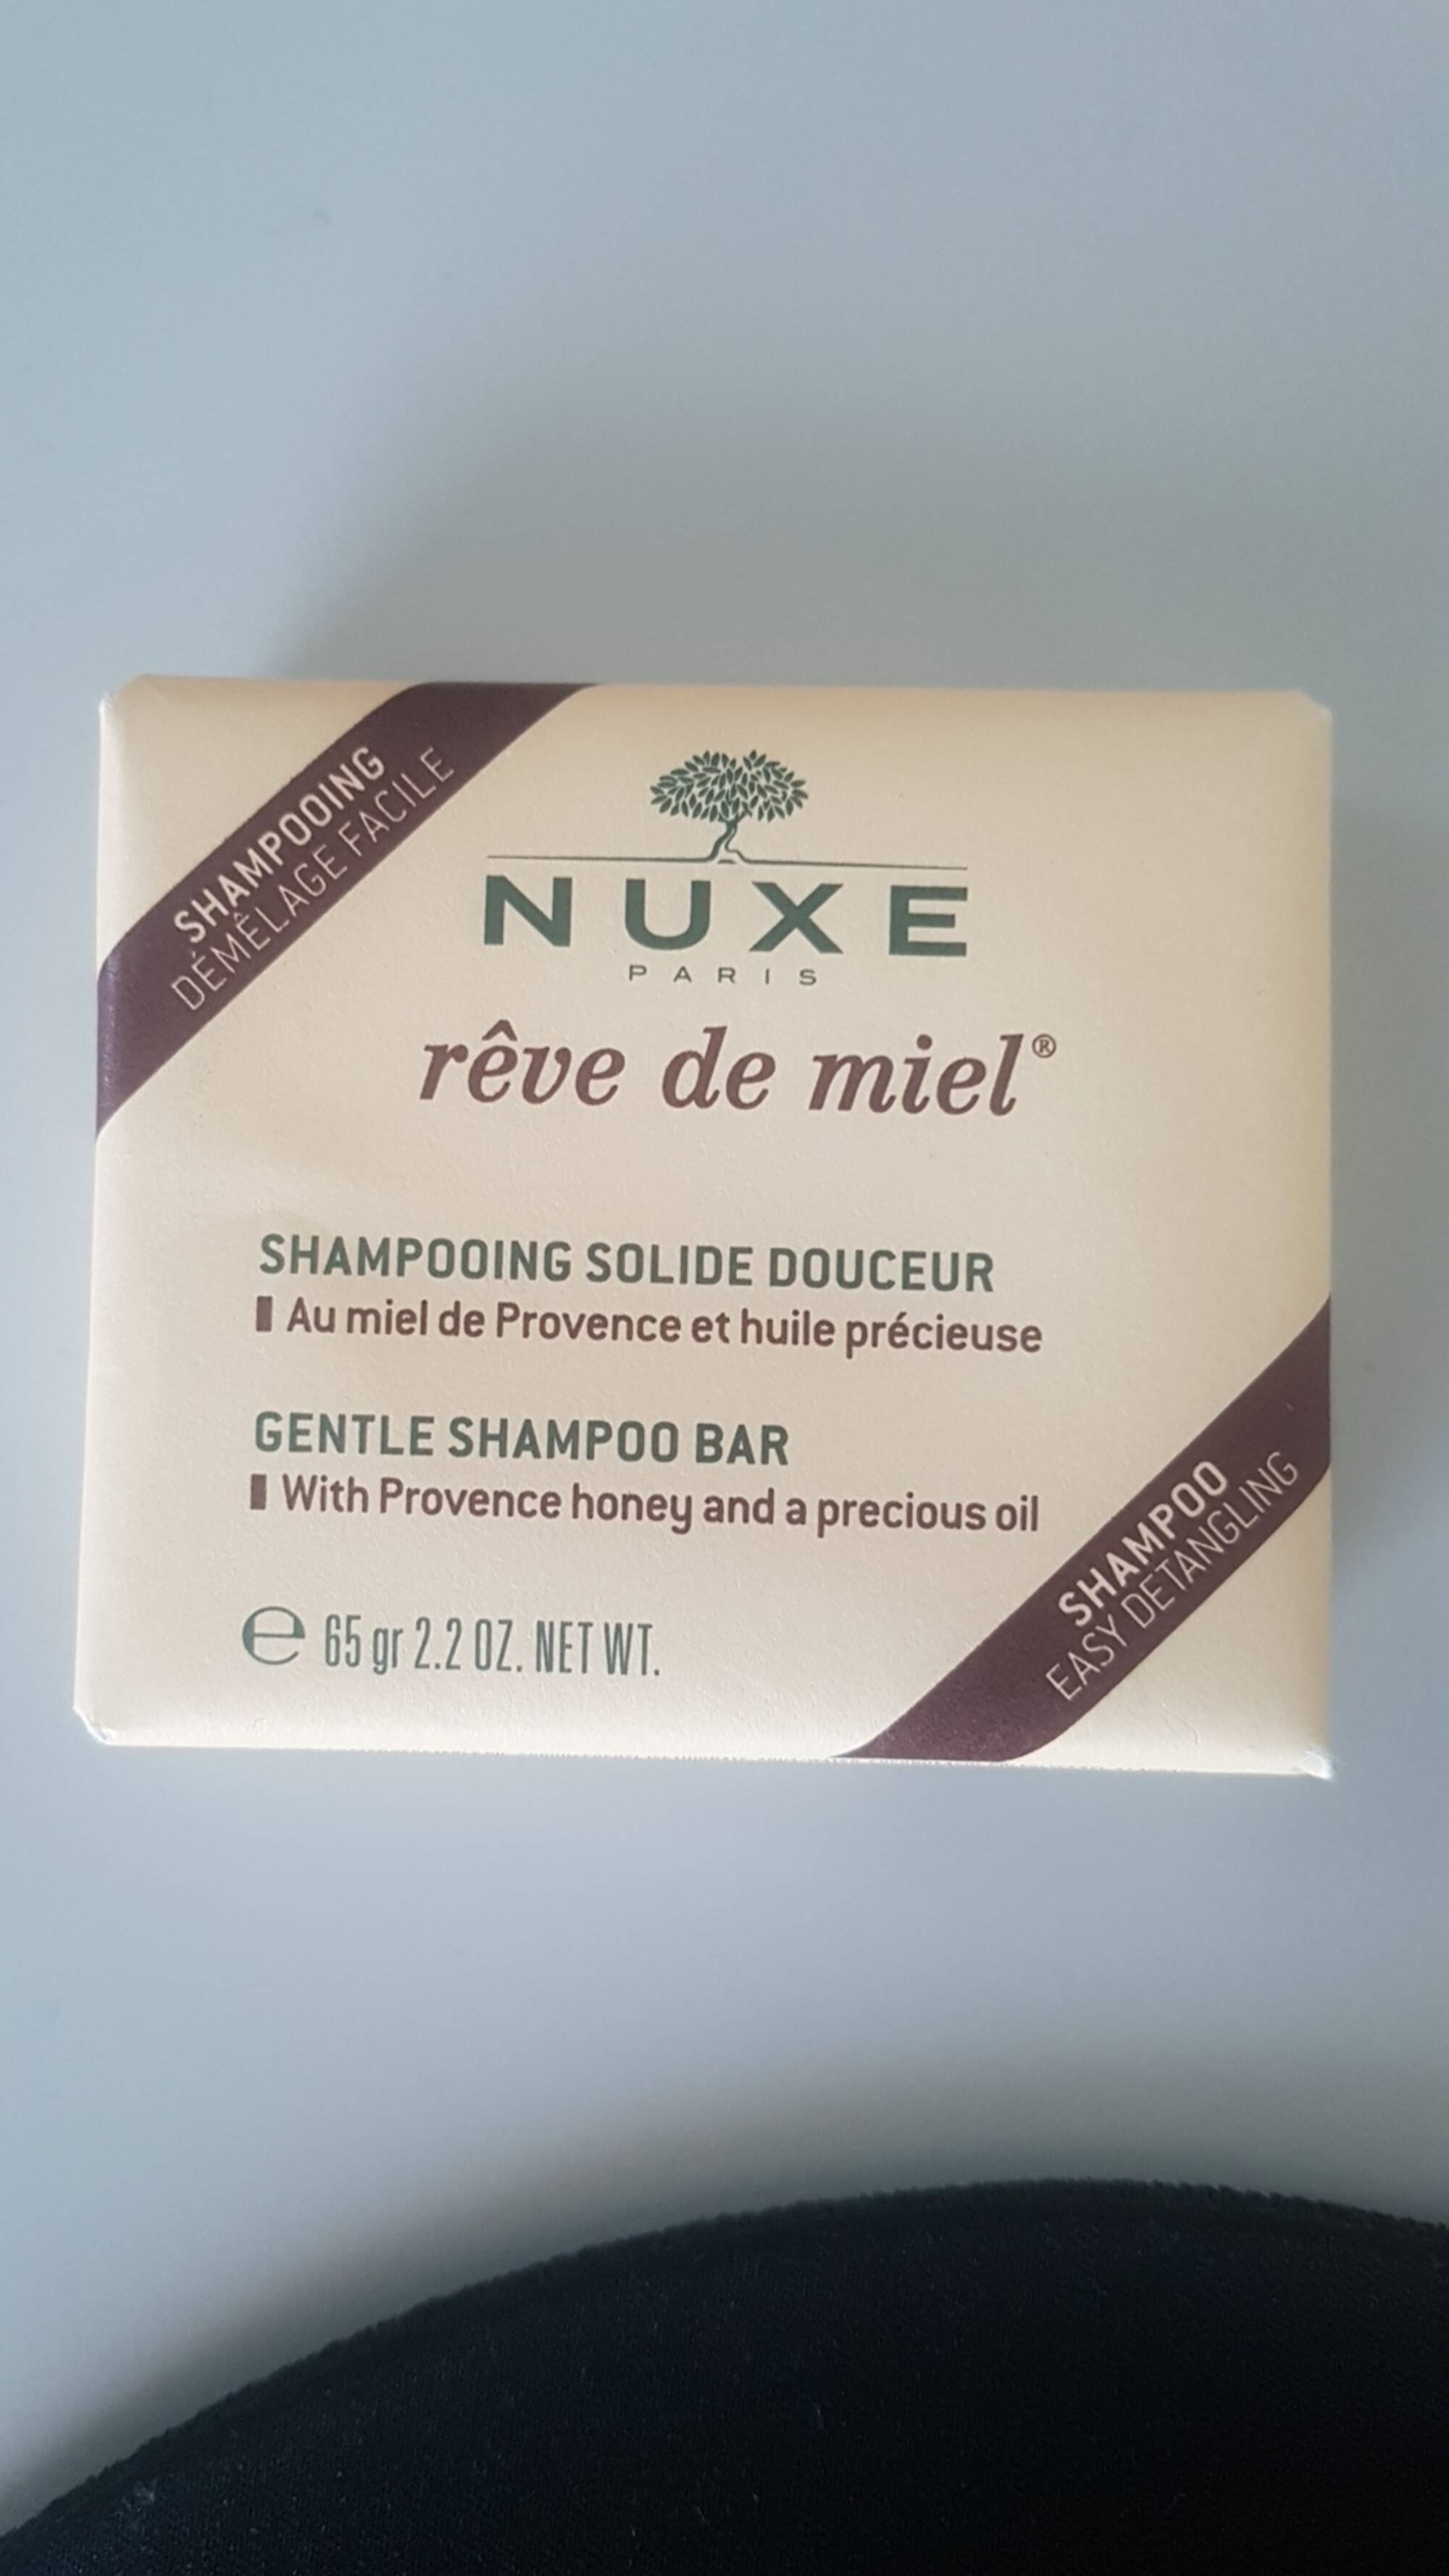 NUXE PARIS - Rêve de miel - Shampooing solide douceur 